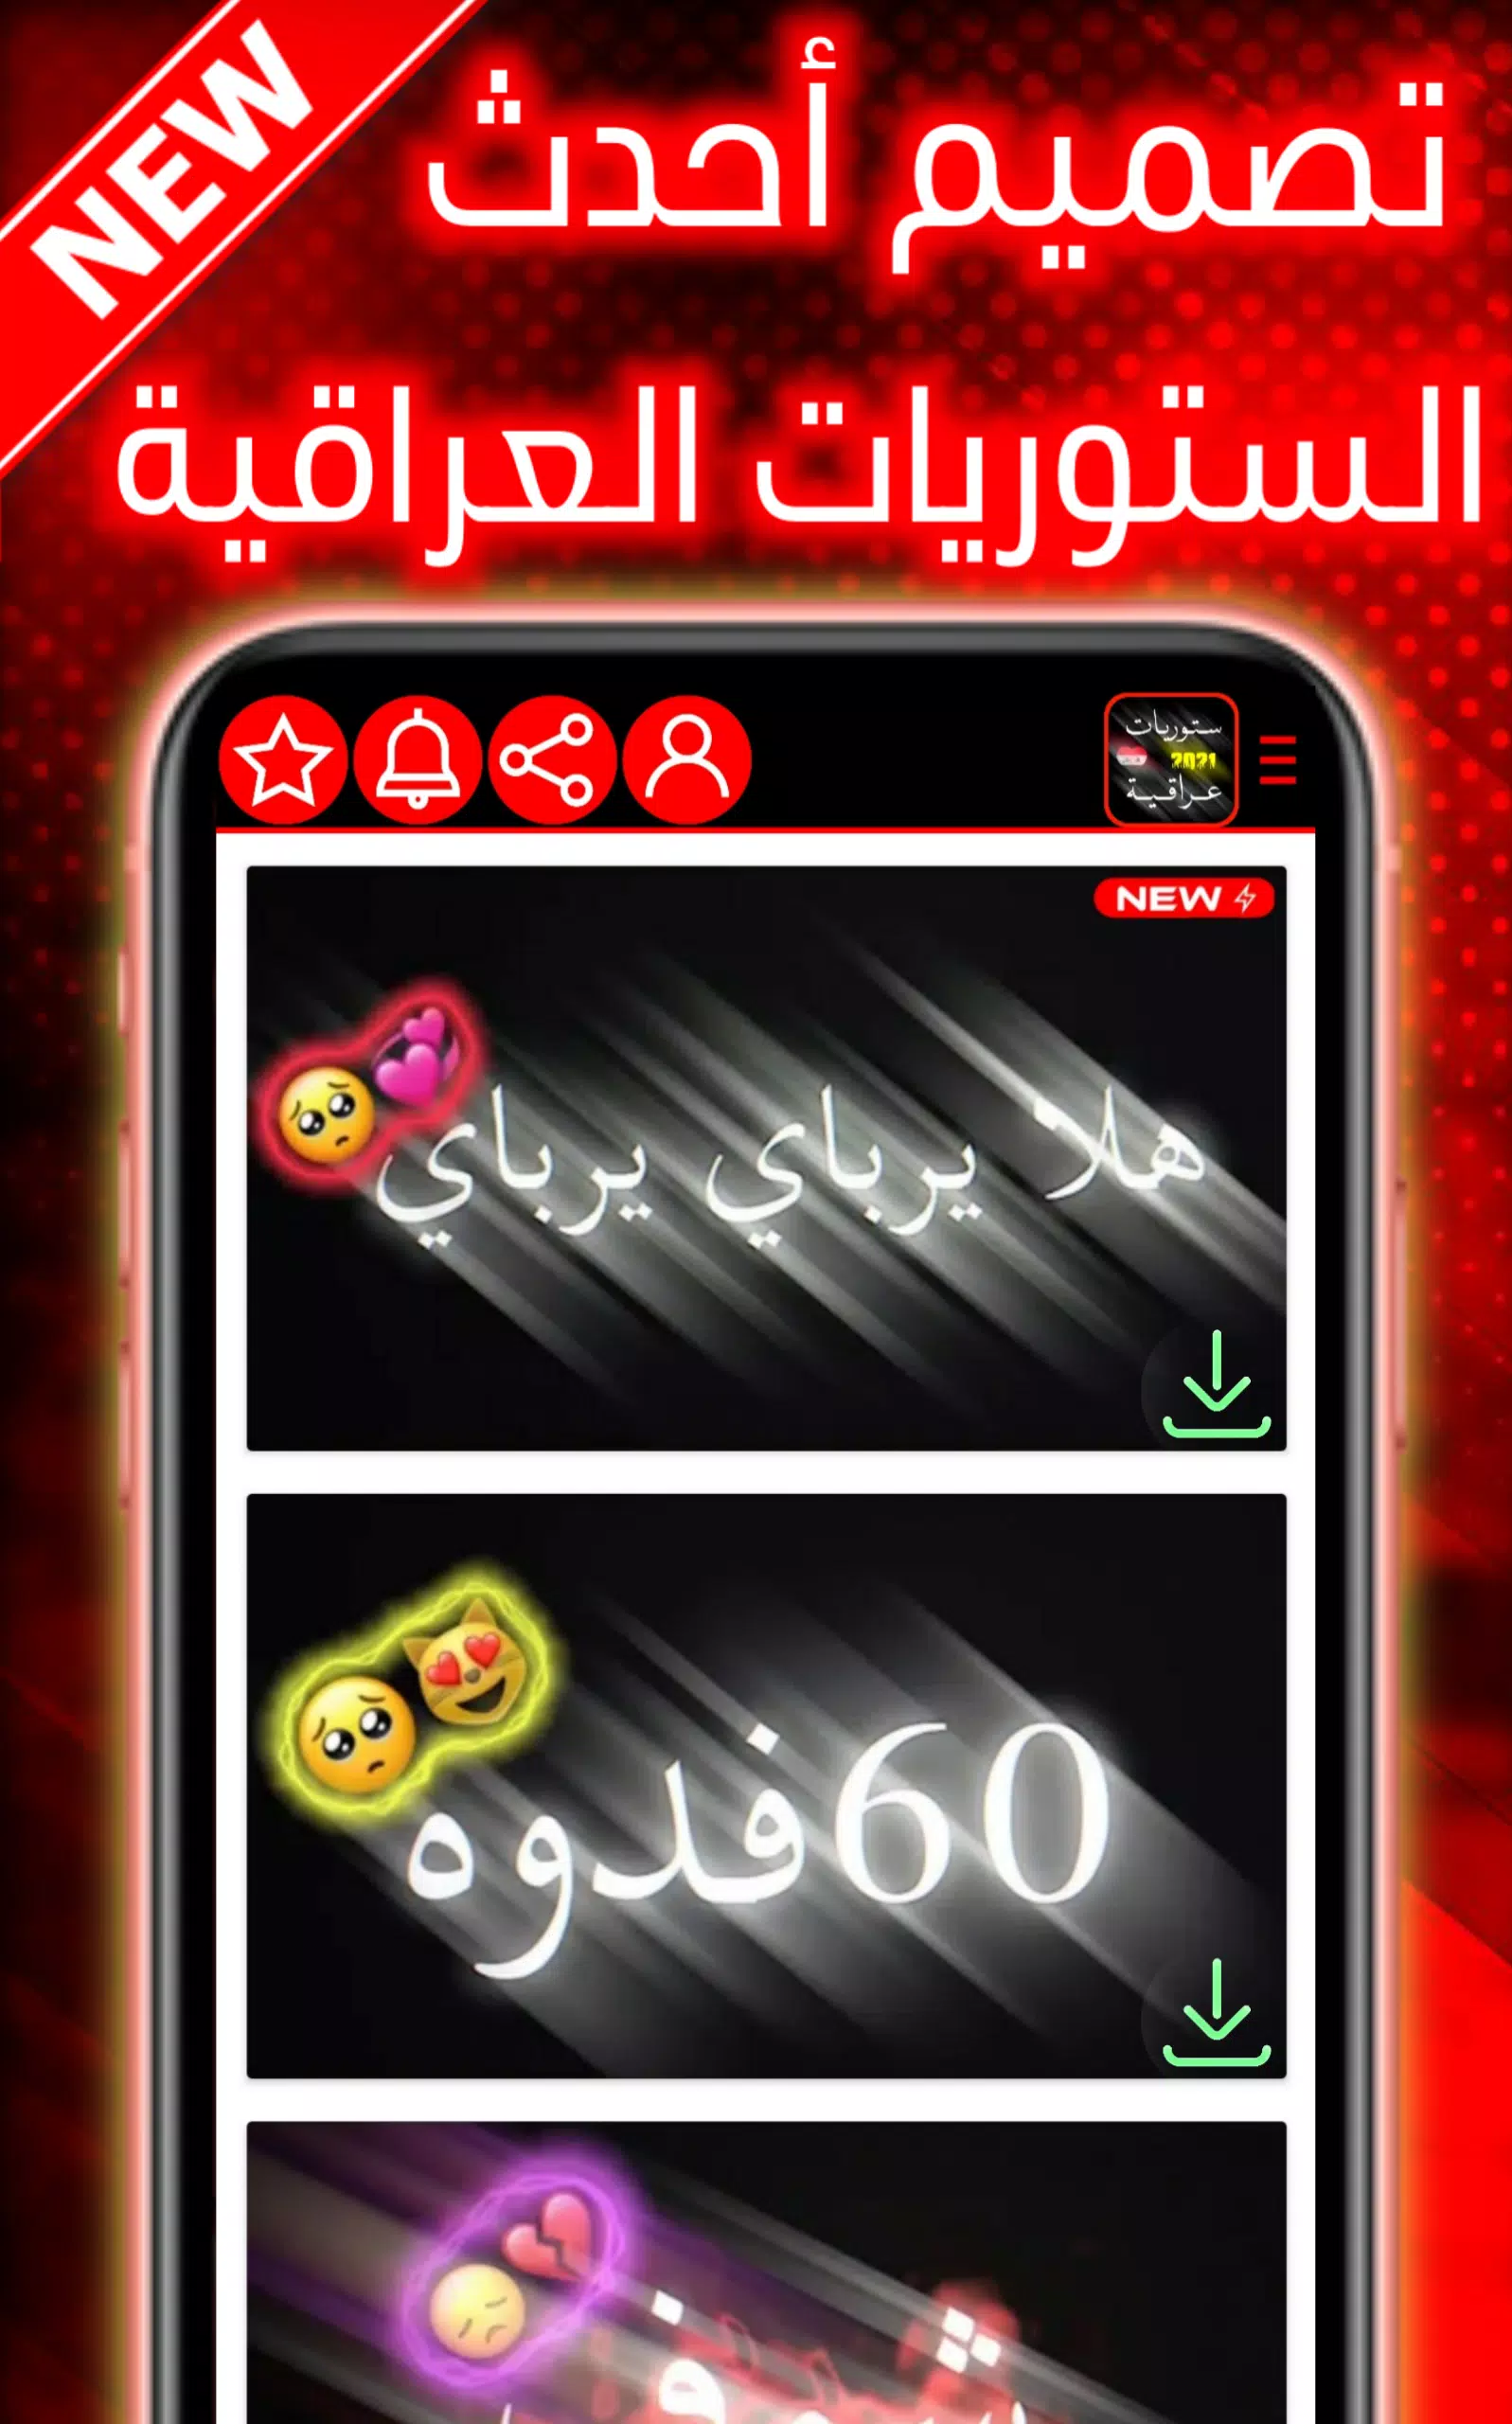 Descarga de APK de تصاميم شاشة سوداء عراقية | بدون حقوق para Android